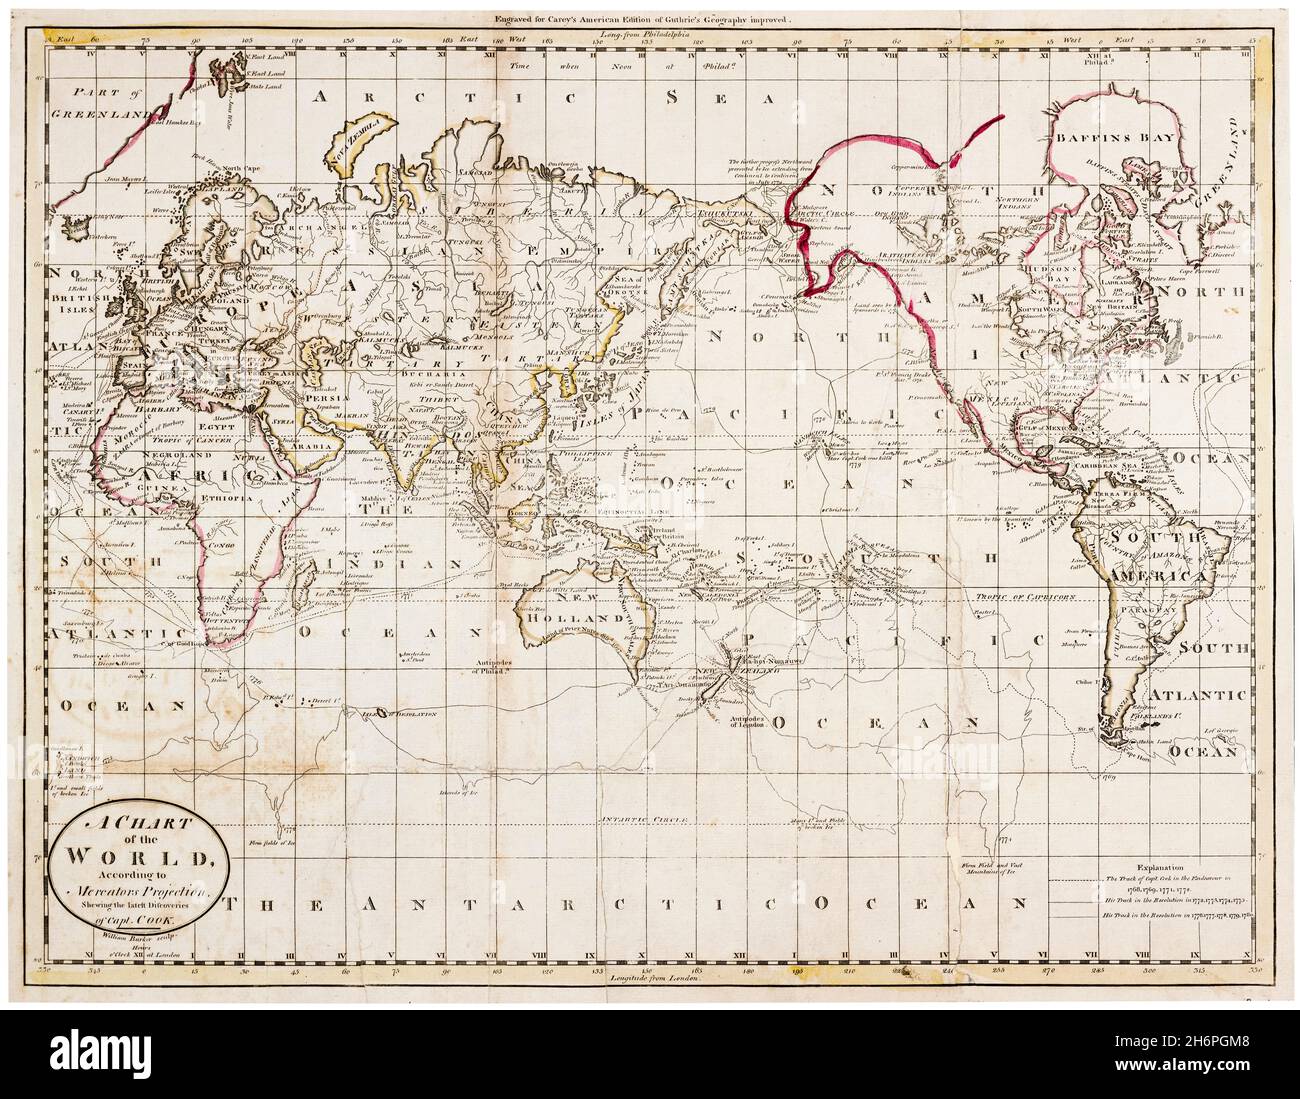 Carte du monde britannique du XVIIIe siècle, montrant les découvertes du capitaine Cook, gravure de William Barker, 1795 Banque D'Images